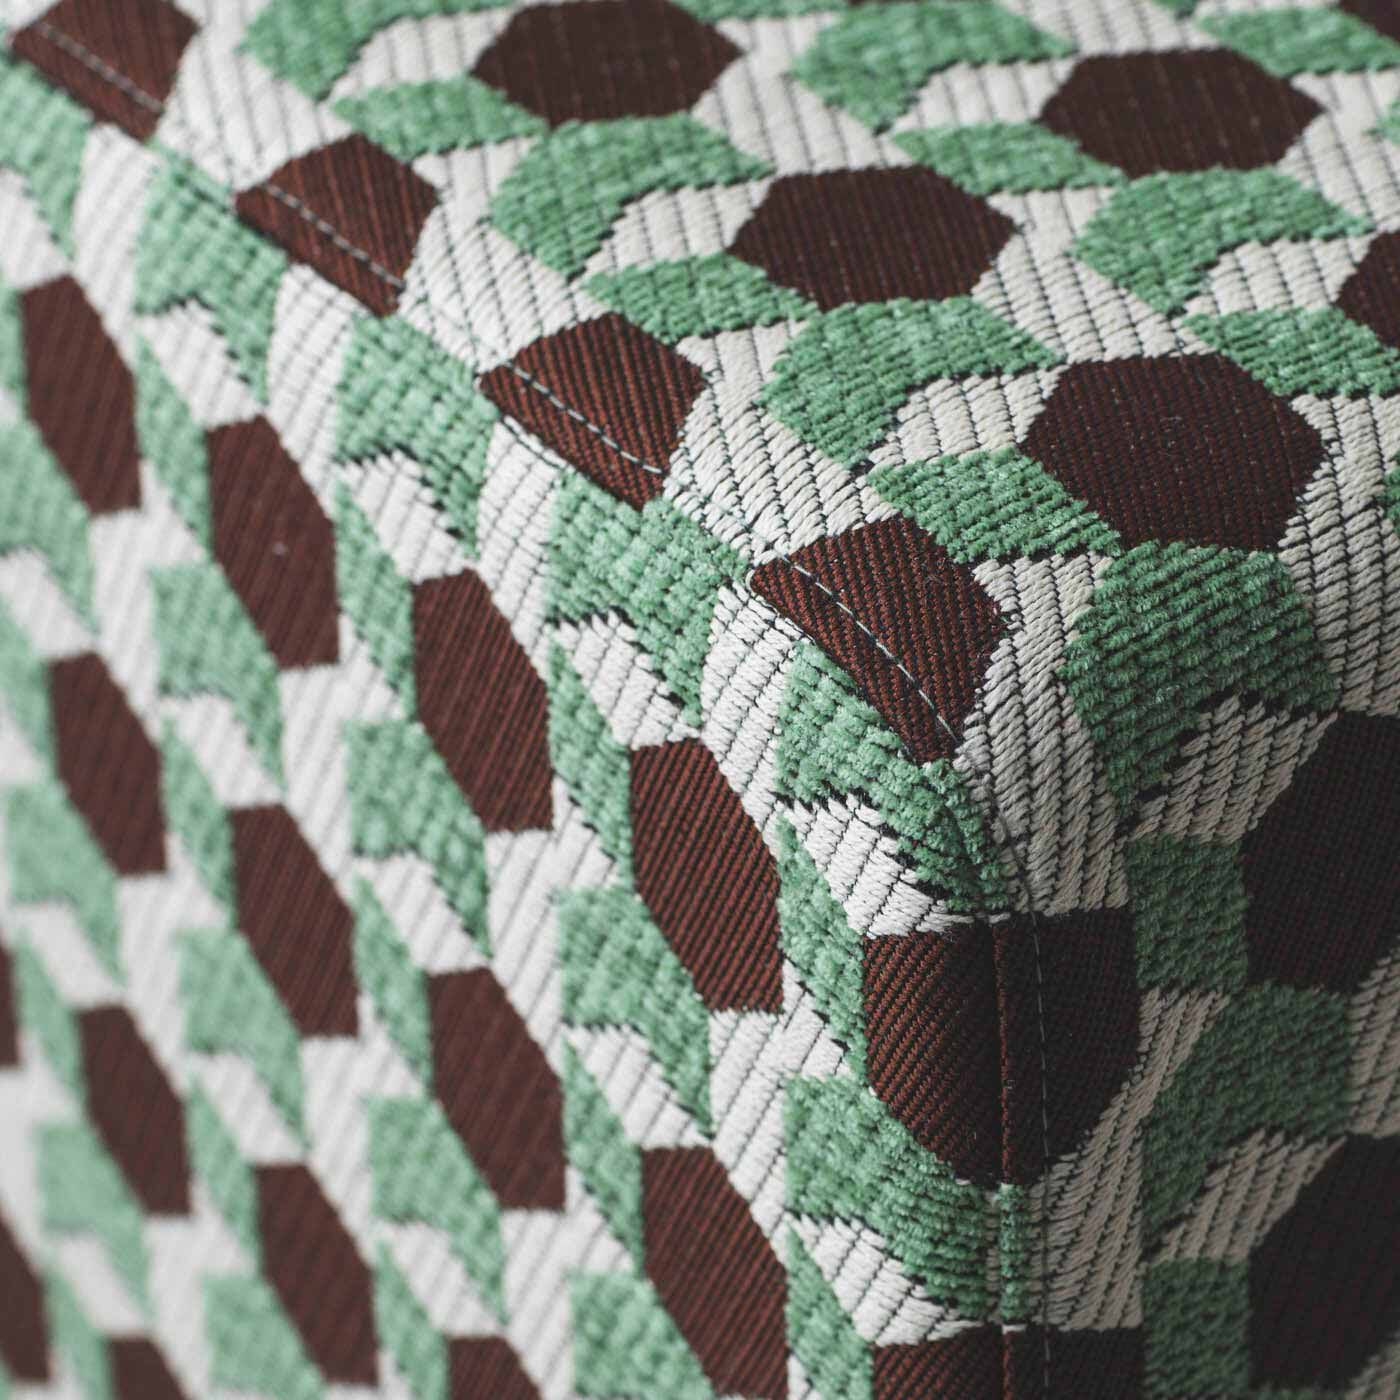 ＆Stories|テキスタイルデザイナーと家具職人が作った 播州ジャカード織のスツール〈チョコミント色〉|モール糸を使って凹凸感を出し、手ざわりよく仕上げています。